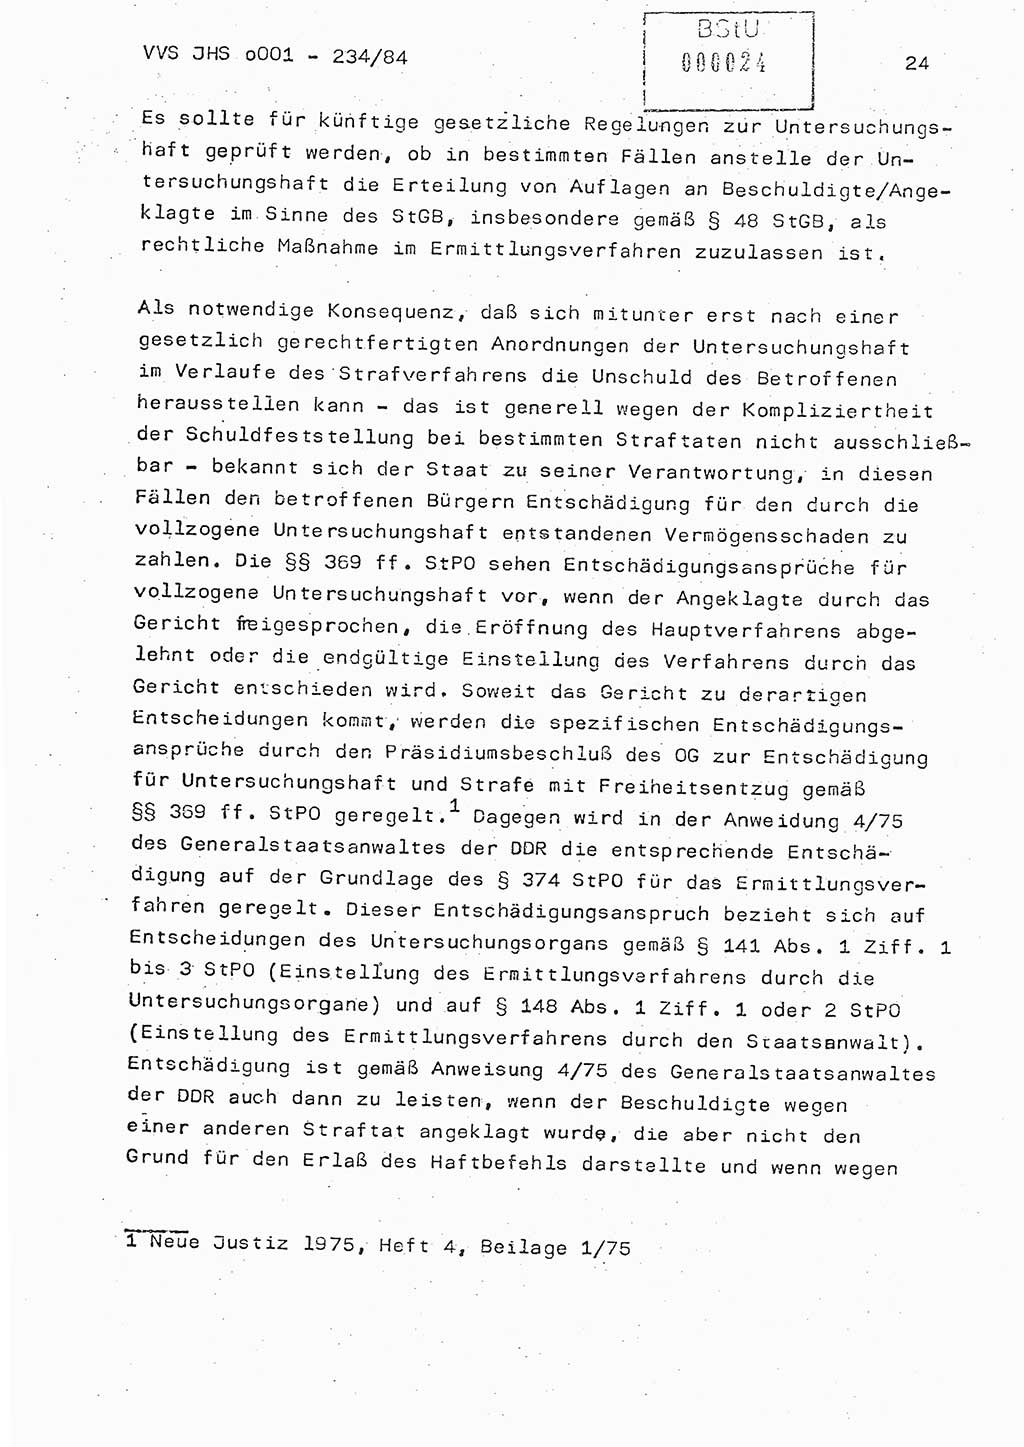 Dissertation Oberst Siegfried Rataizick (Abt. ⅩⅣ), Oberstleutnant Volkmar Heinz (Abt. ⅩⅣ), Oberstleutnant Werner Stein (HA Ⅸ), Hauptmann Heinz Conrad (JHS), Ministerium für Staatssicherheit (MfS) [Deutsche Demokratische Republik (DDR)], Juristische Hochschule (JHS), Vertrauliche Verschlußsache (VVS) o001-234/84, Potsdam 1984, Seite 24 (Diss. MfS DDR JHS VVS o001-234/84 1984, S. 24)